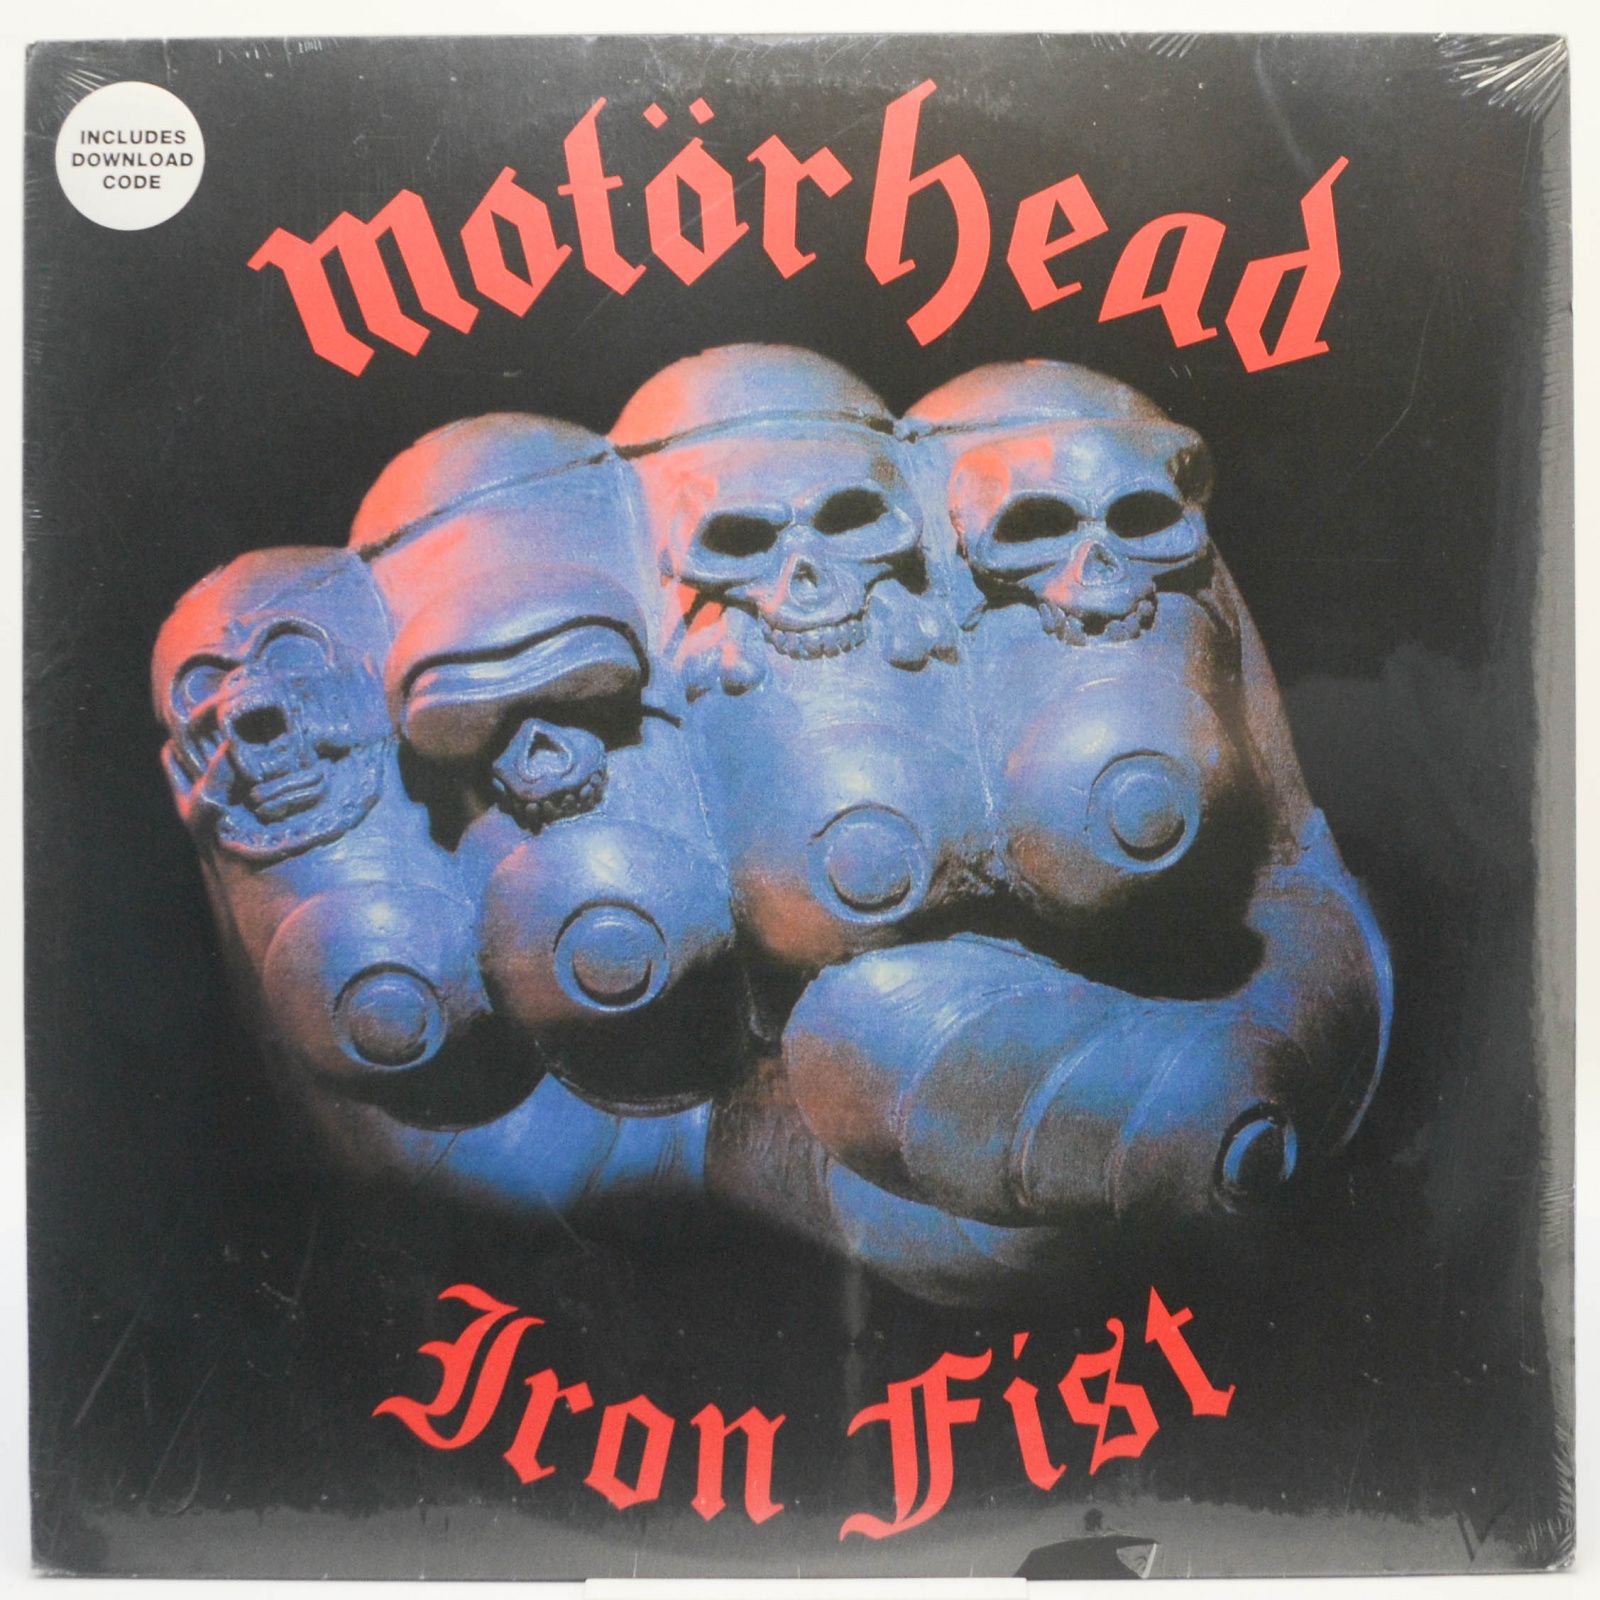 Motörhead — Iron Fist, 2015